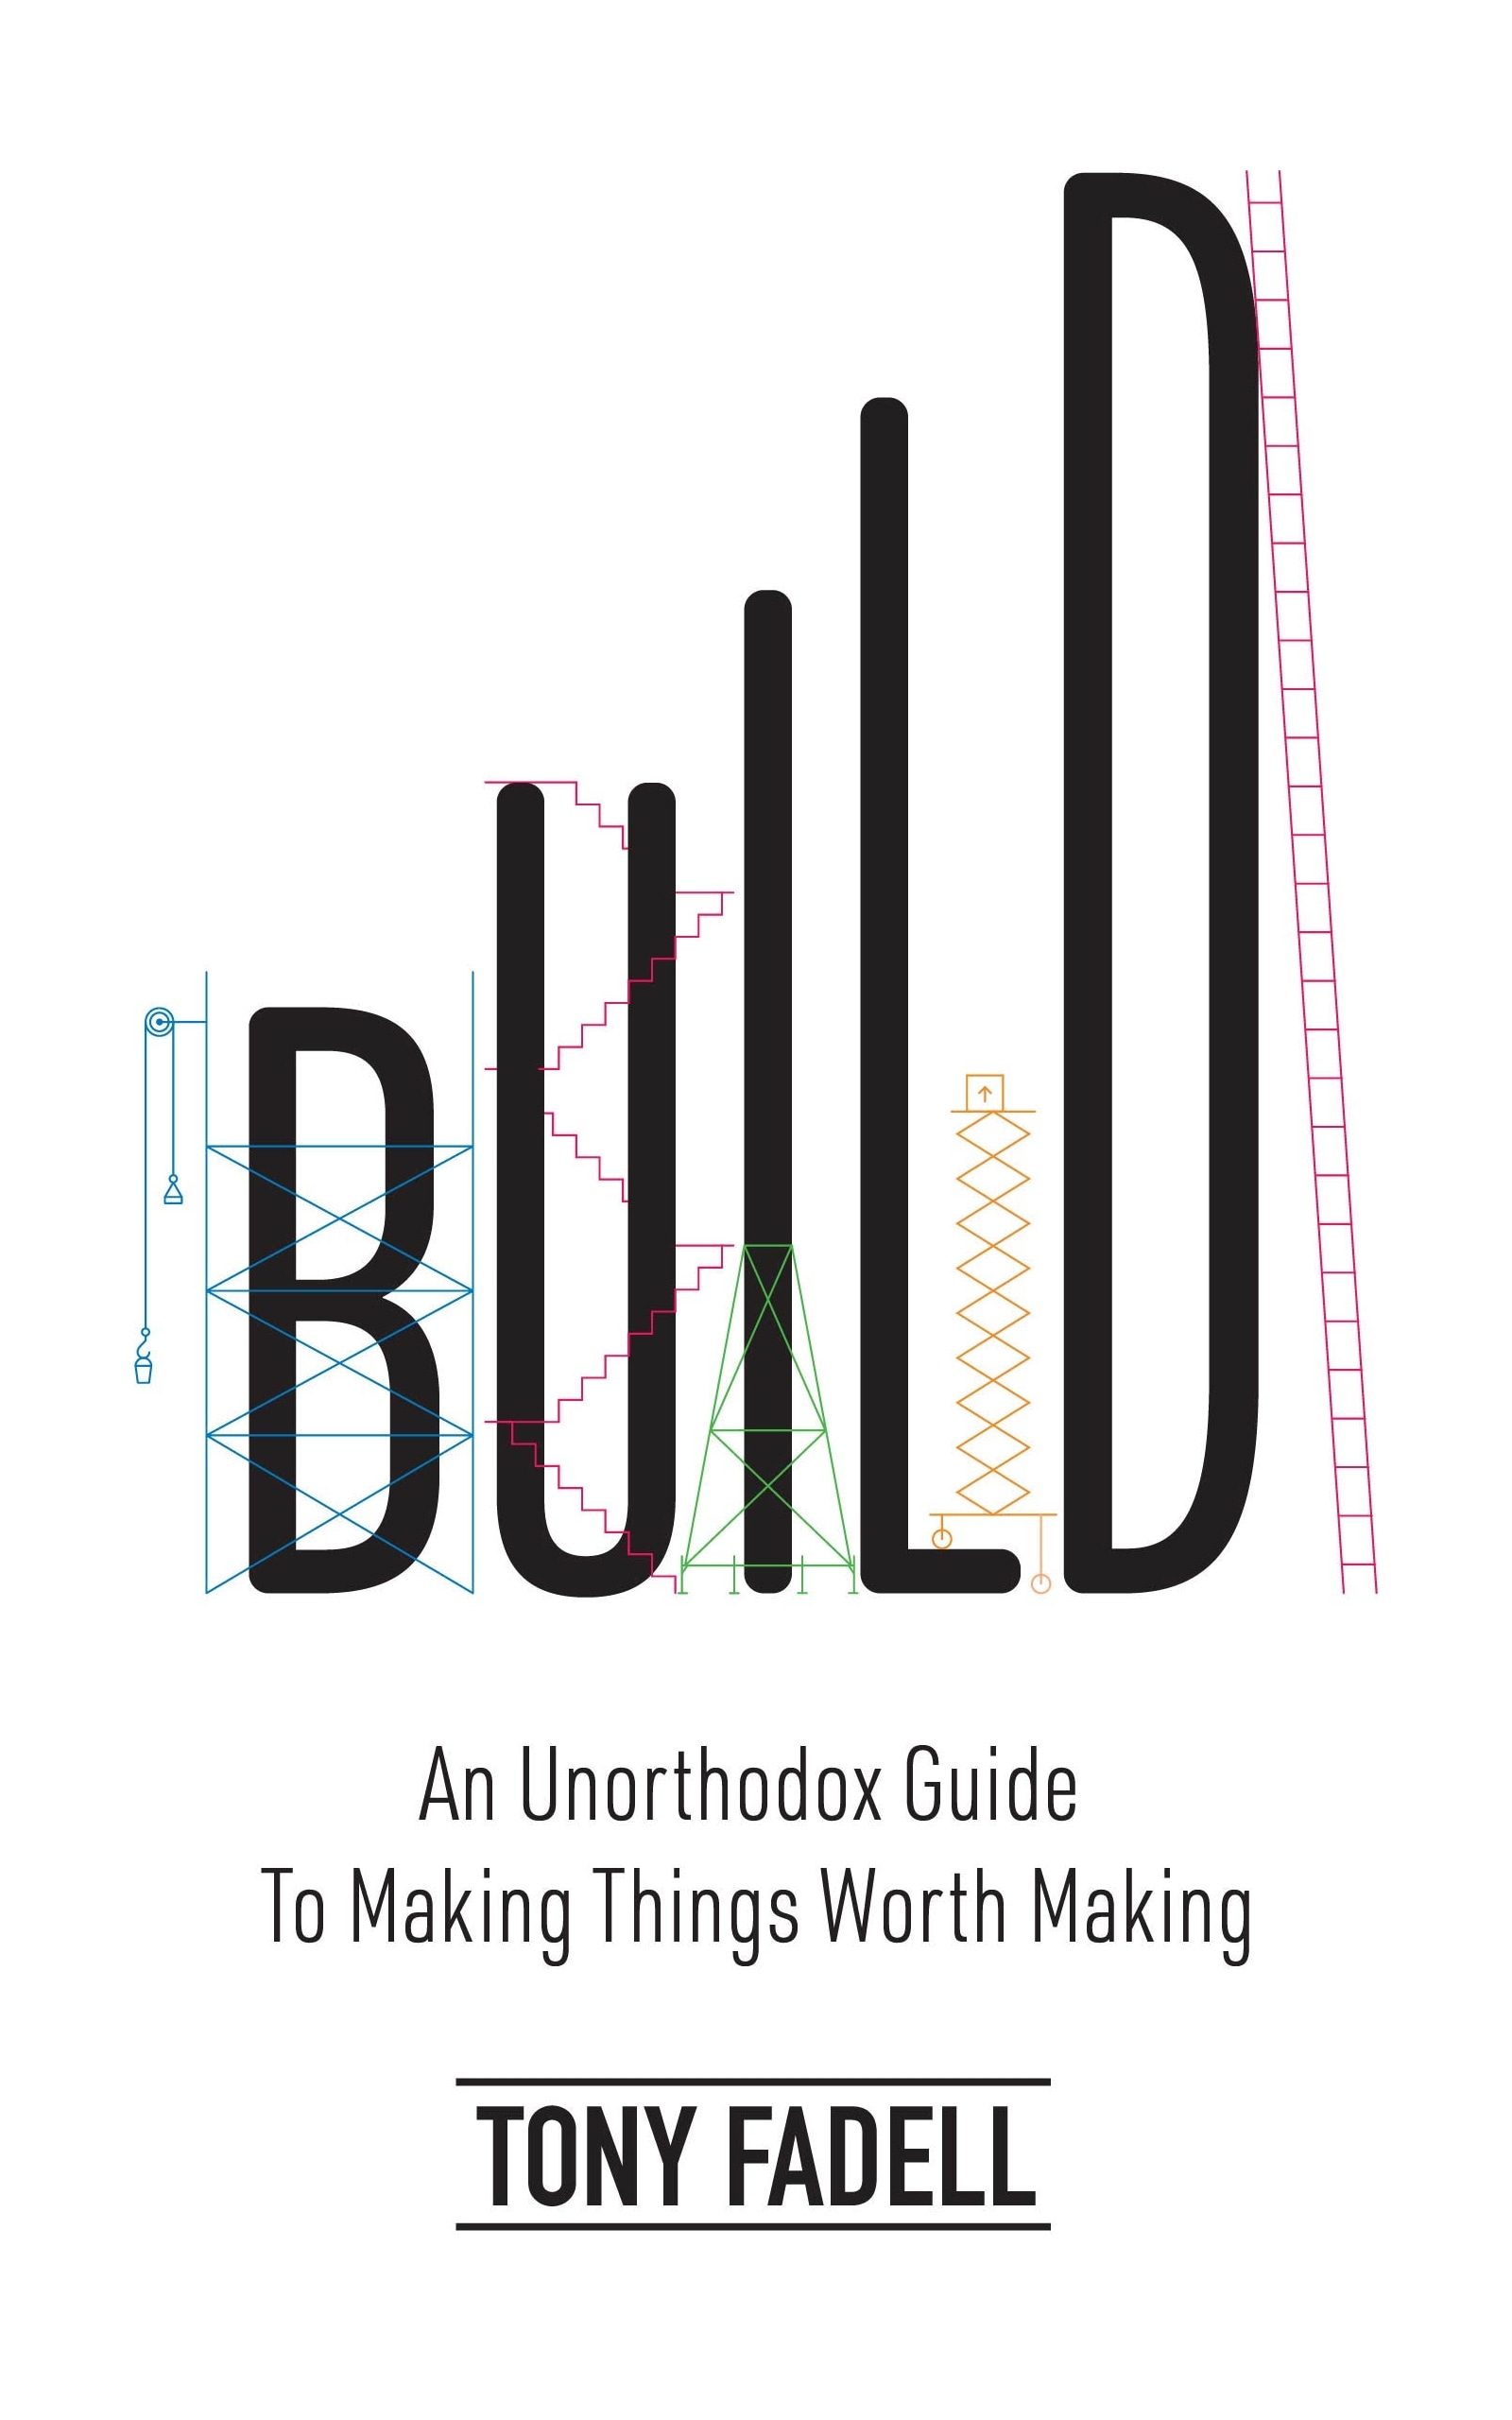 Book “Build” by Tony Fadell — May 10, 2022